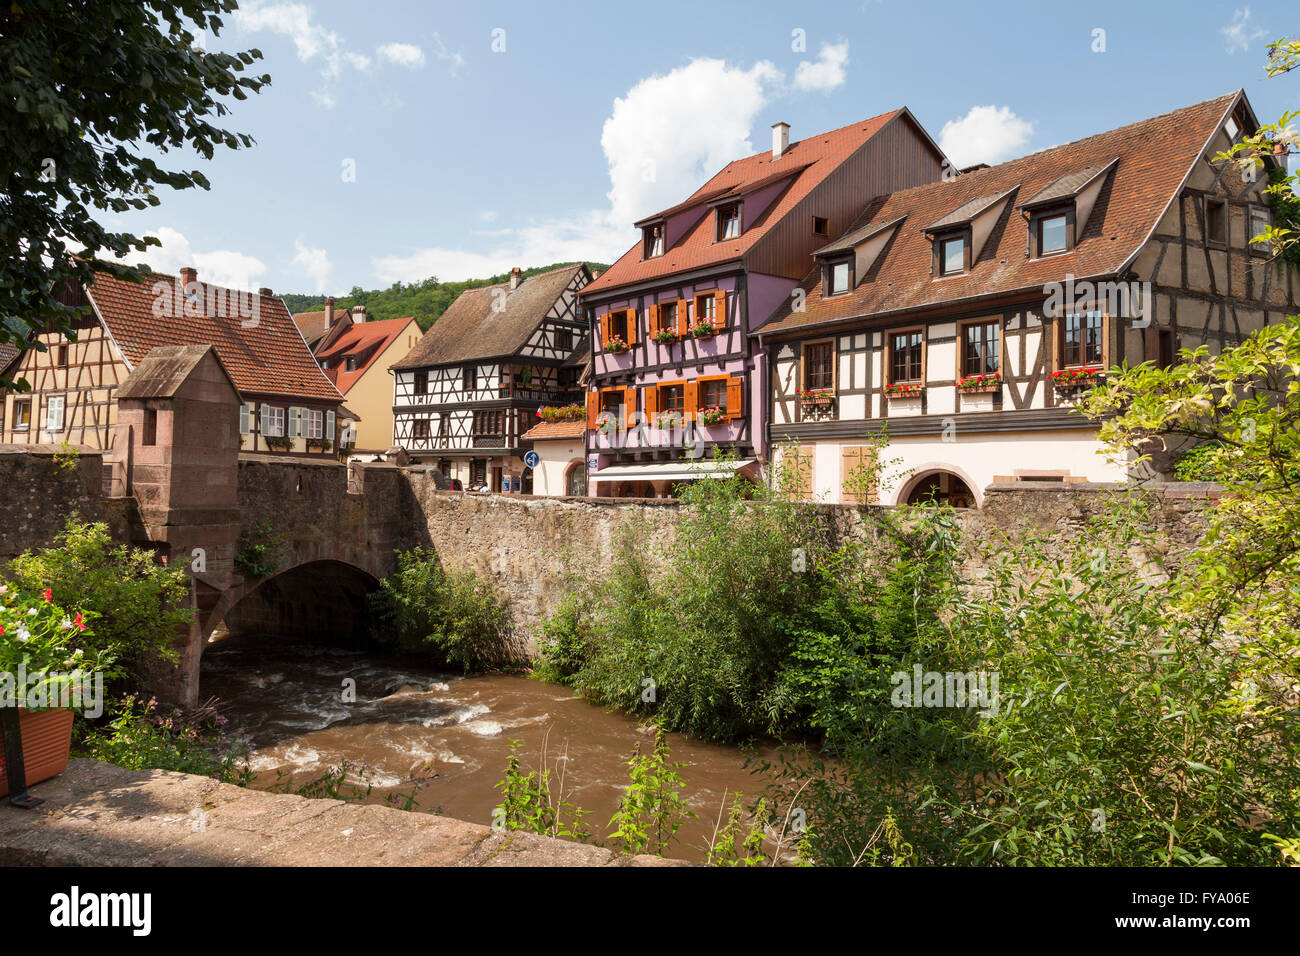 Maisons à pans de bois sur la rivière Weiss, Kaysersberg, Alsace, France Banque D'Images